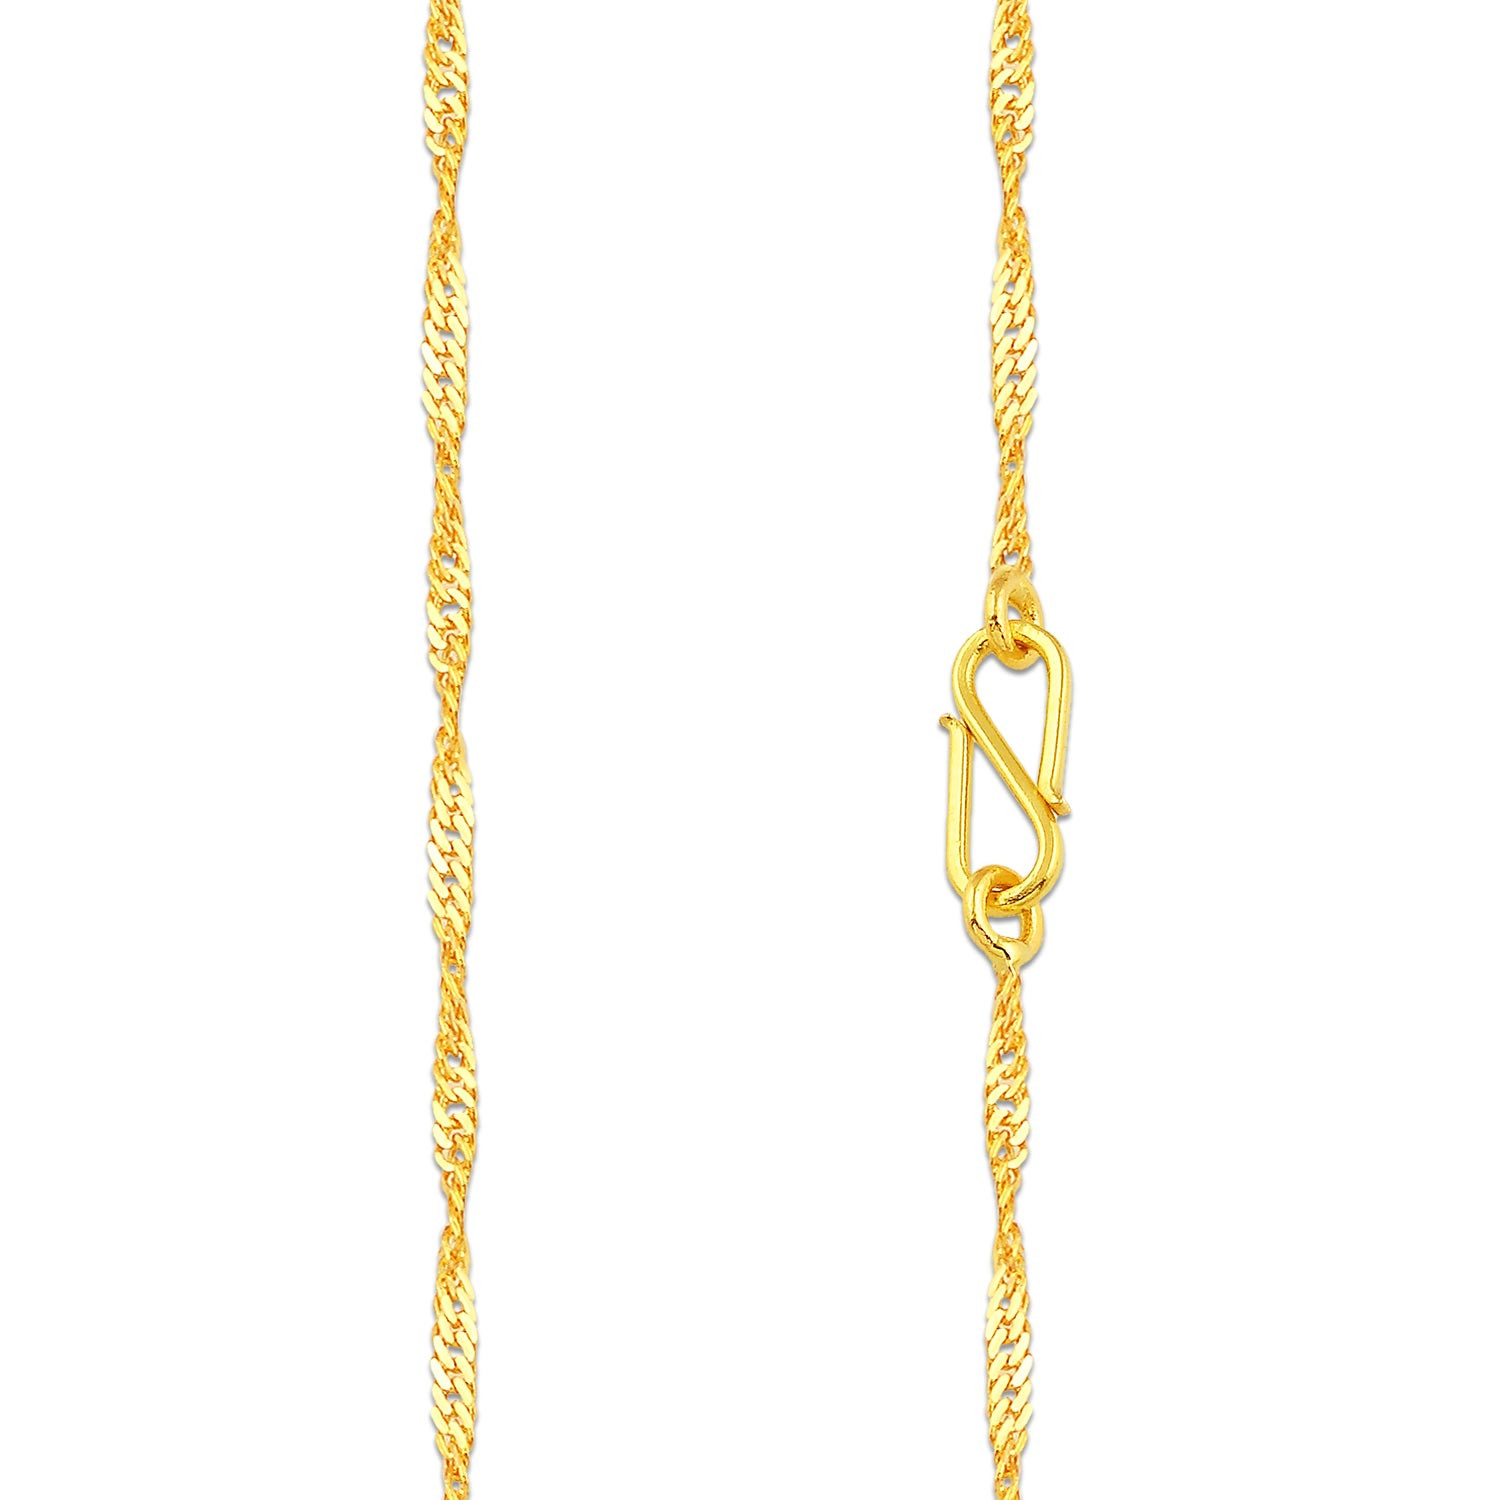 Malabar Gold Thread Chain